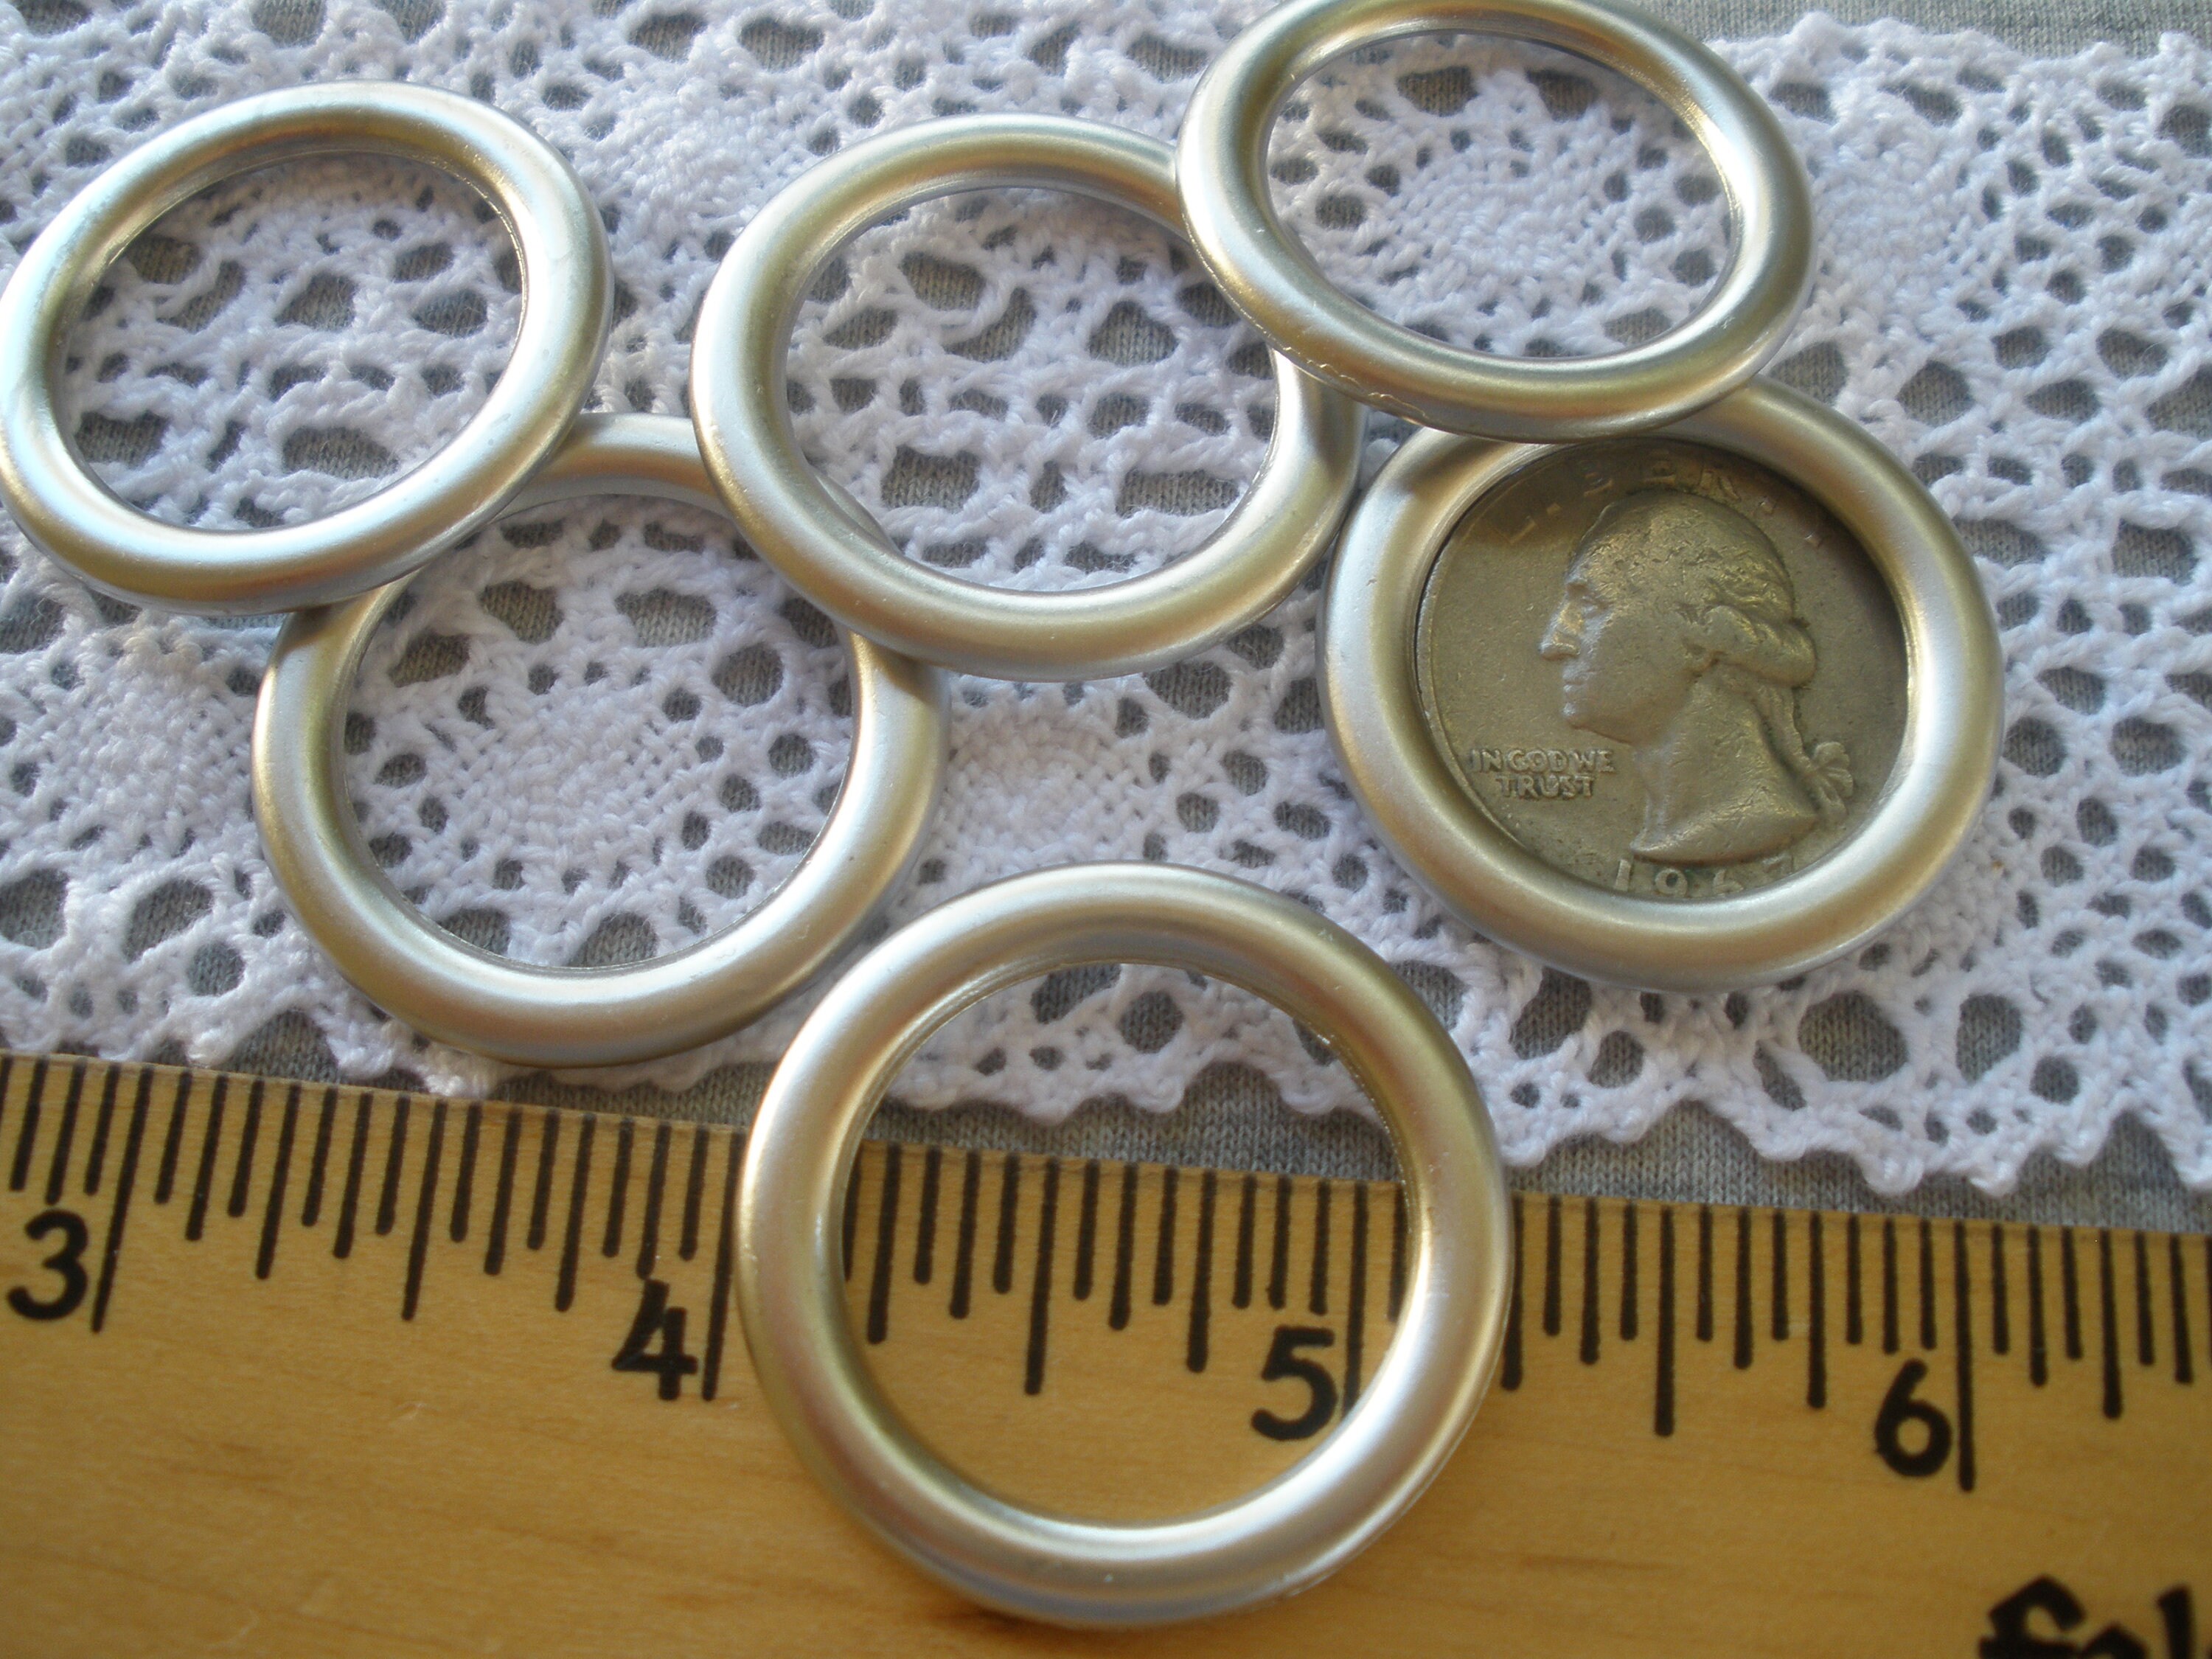 Steel Metal O-rings Welded Metal Loops Round Formed Rings Silver Color Bag  Holder, Macramé and Crafting Loop Heavy Duty Multiple Sizes 